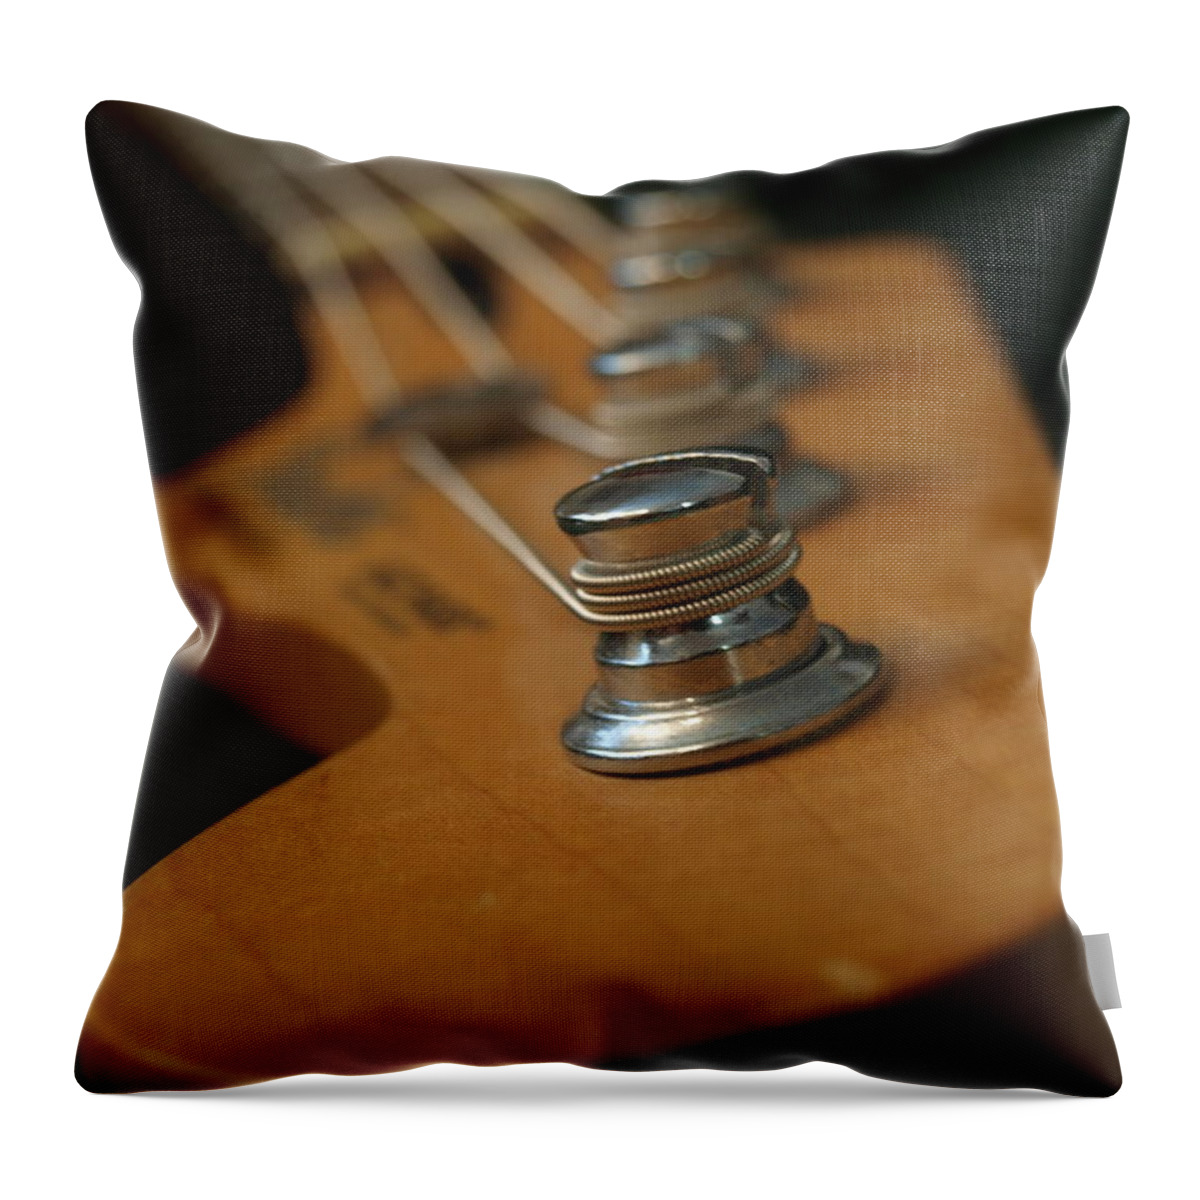 Fender Throw Pillow featuring the photograph Fender Bass Guitar - 3 by Vivian Martin